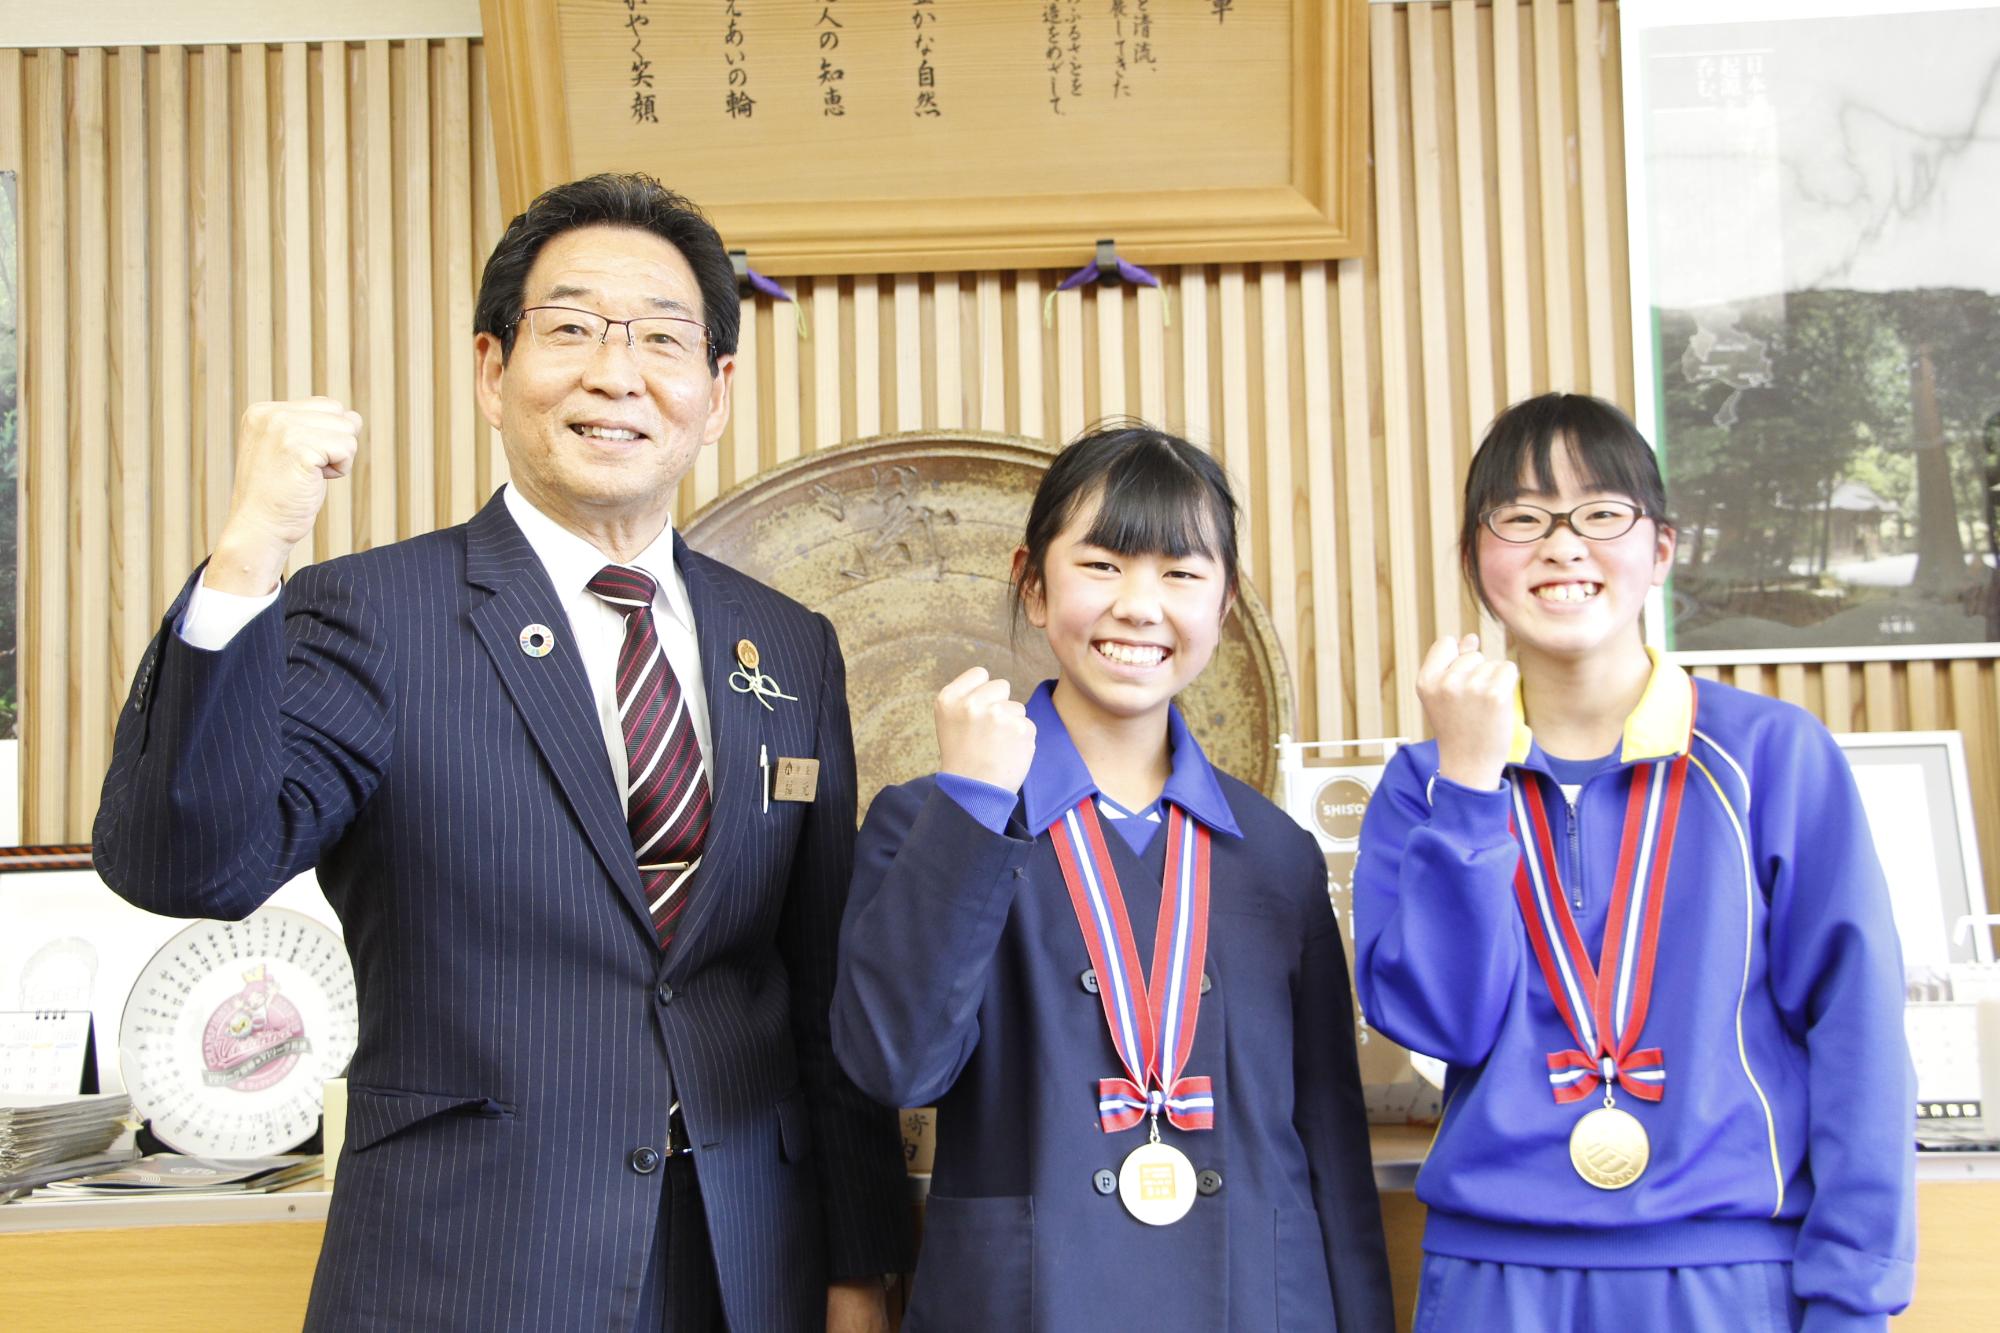 ジュニアオリンピックに出場する山本 陽さんと川上寧々さんが宍粟市長を表敬し、3人並んでガッツポーズで笑っている写真